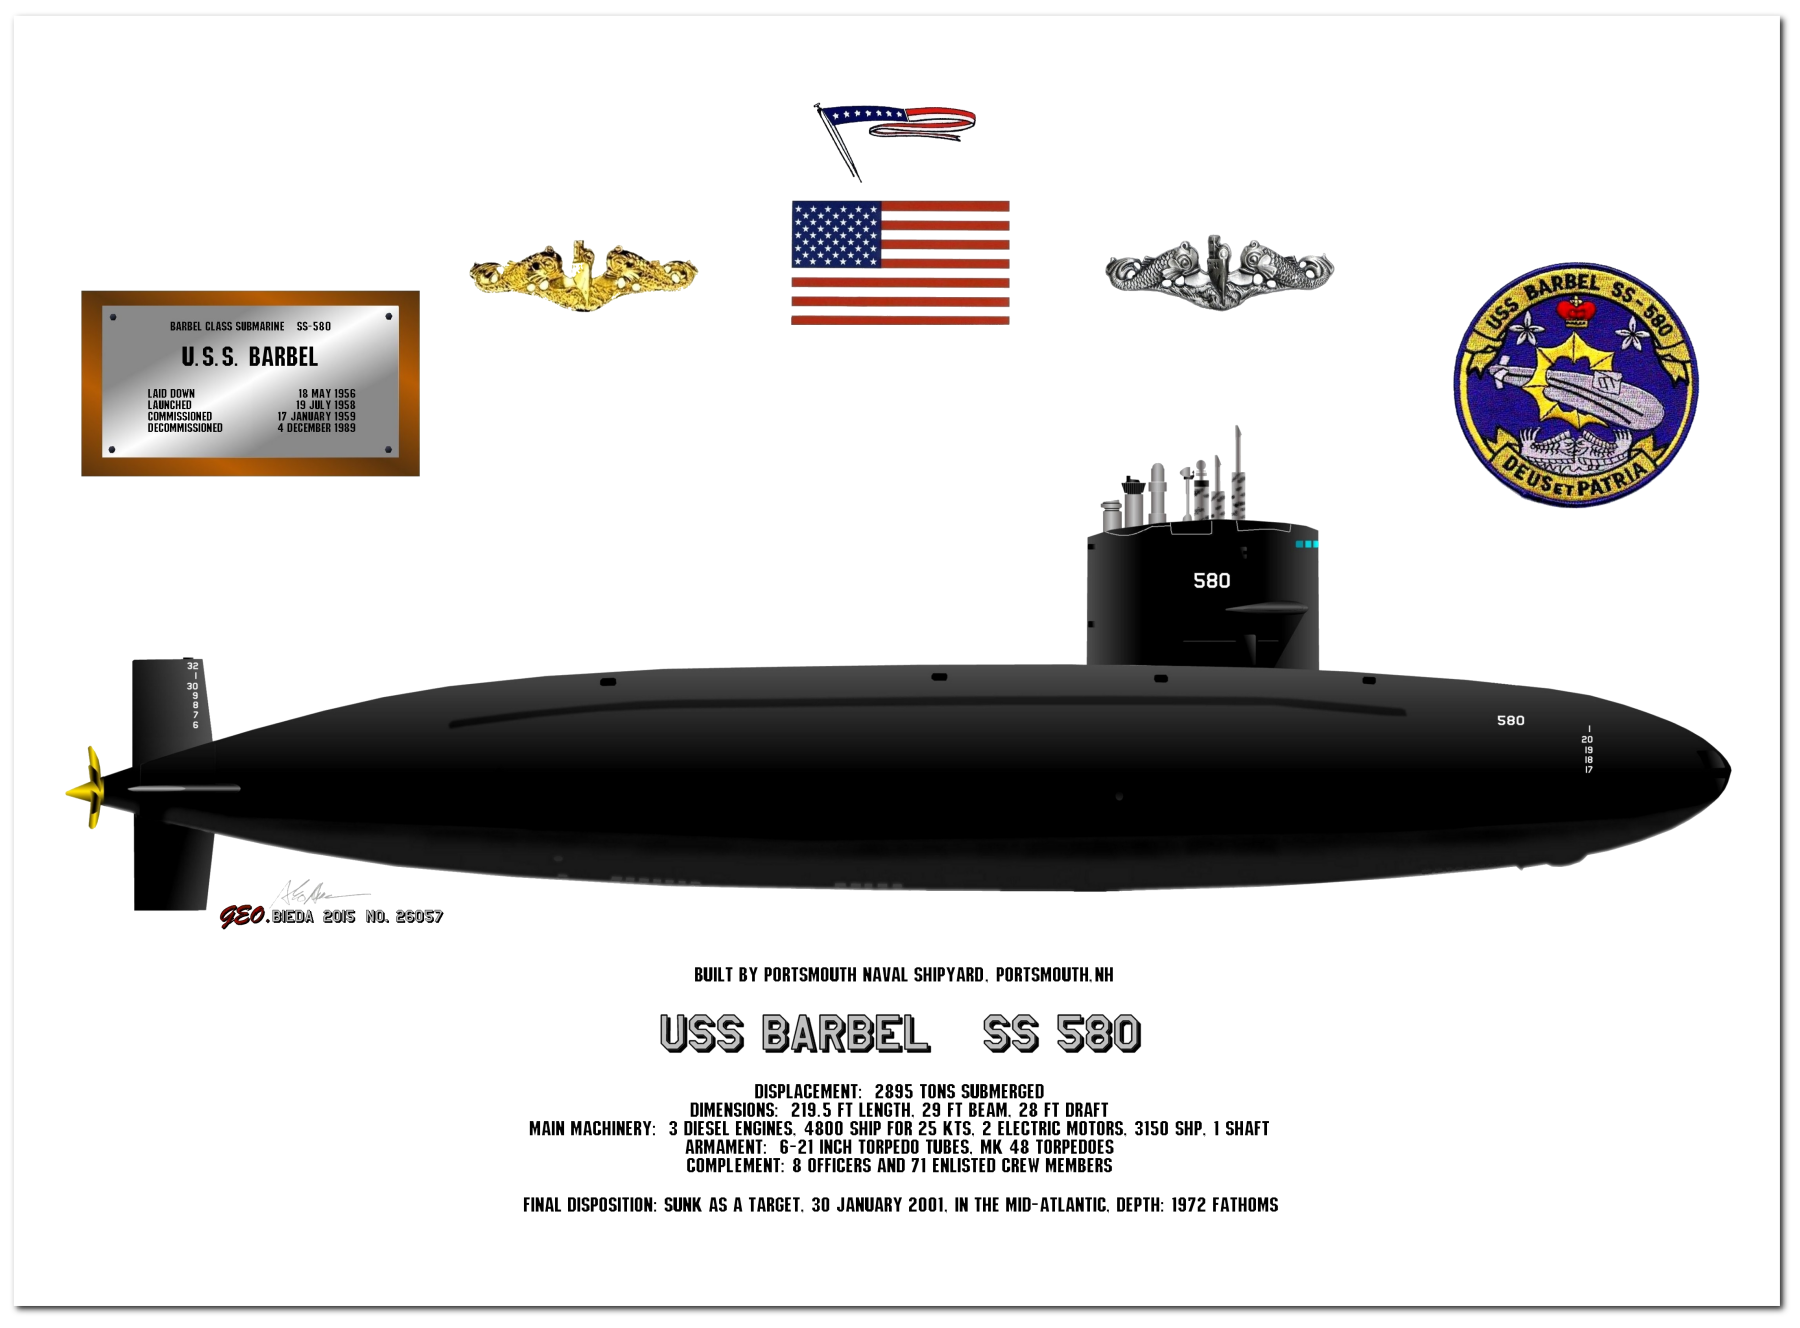 Barbel Class Diesel Submarine Profile Drawings by George Bieda